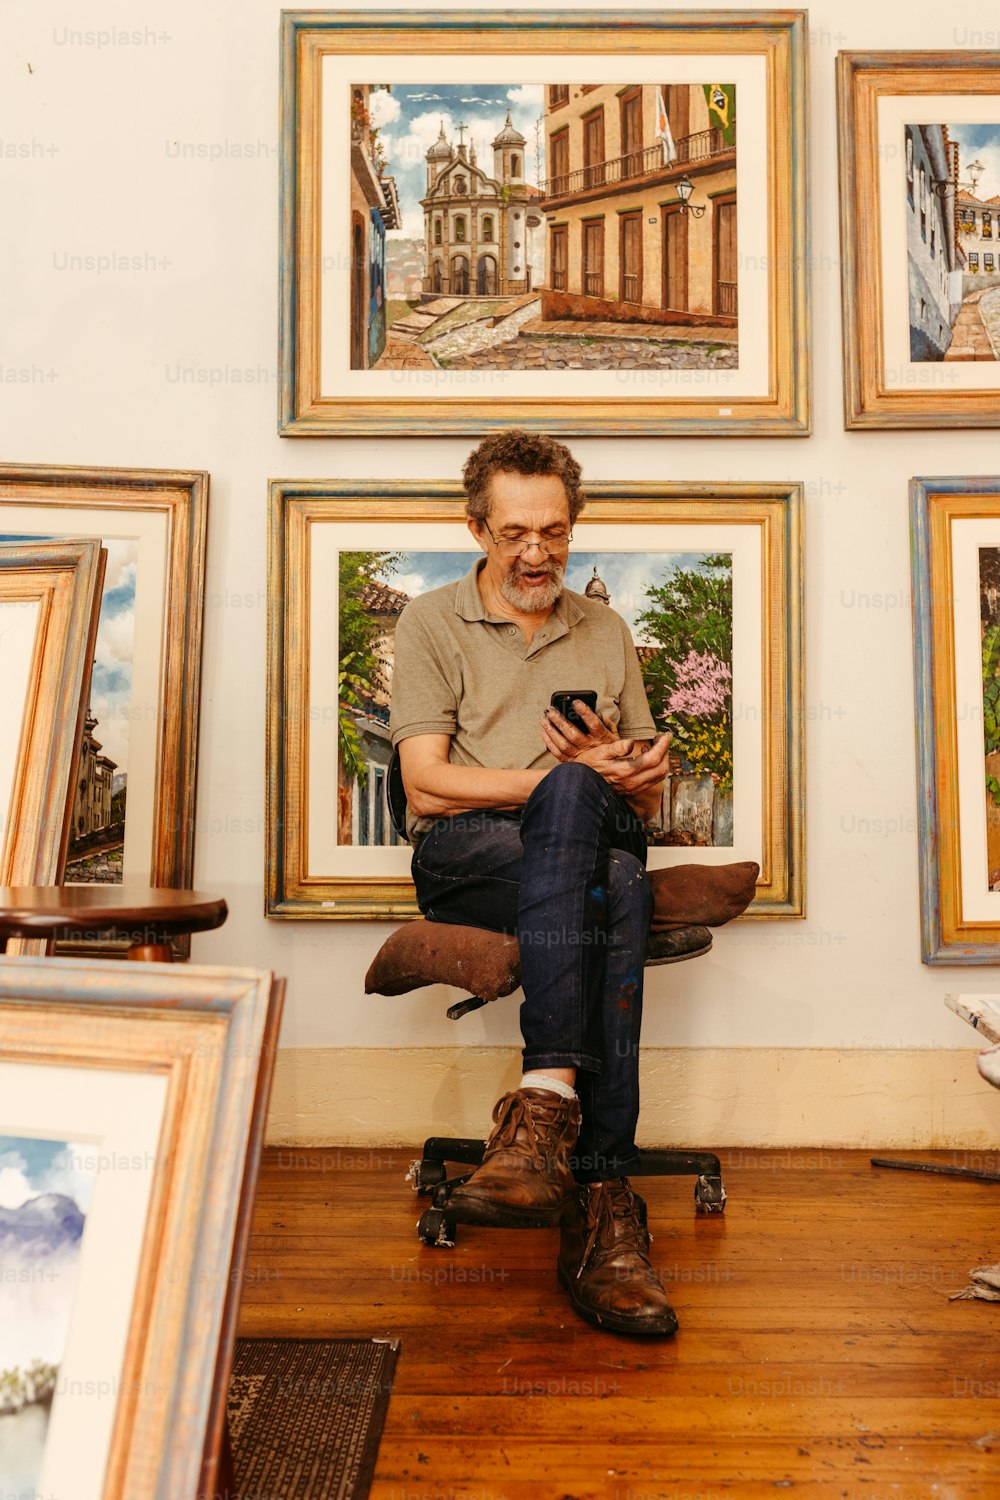 Un homme assis sur une chaise devant un mur de peintures